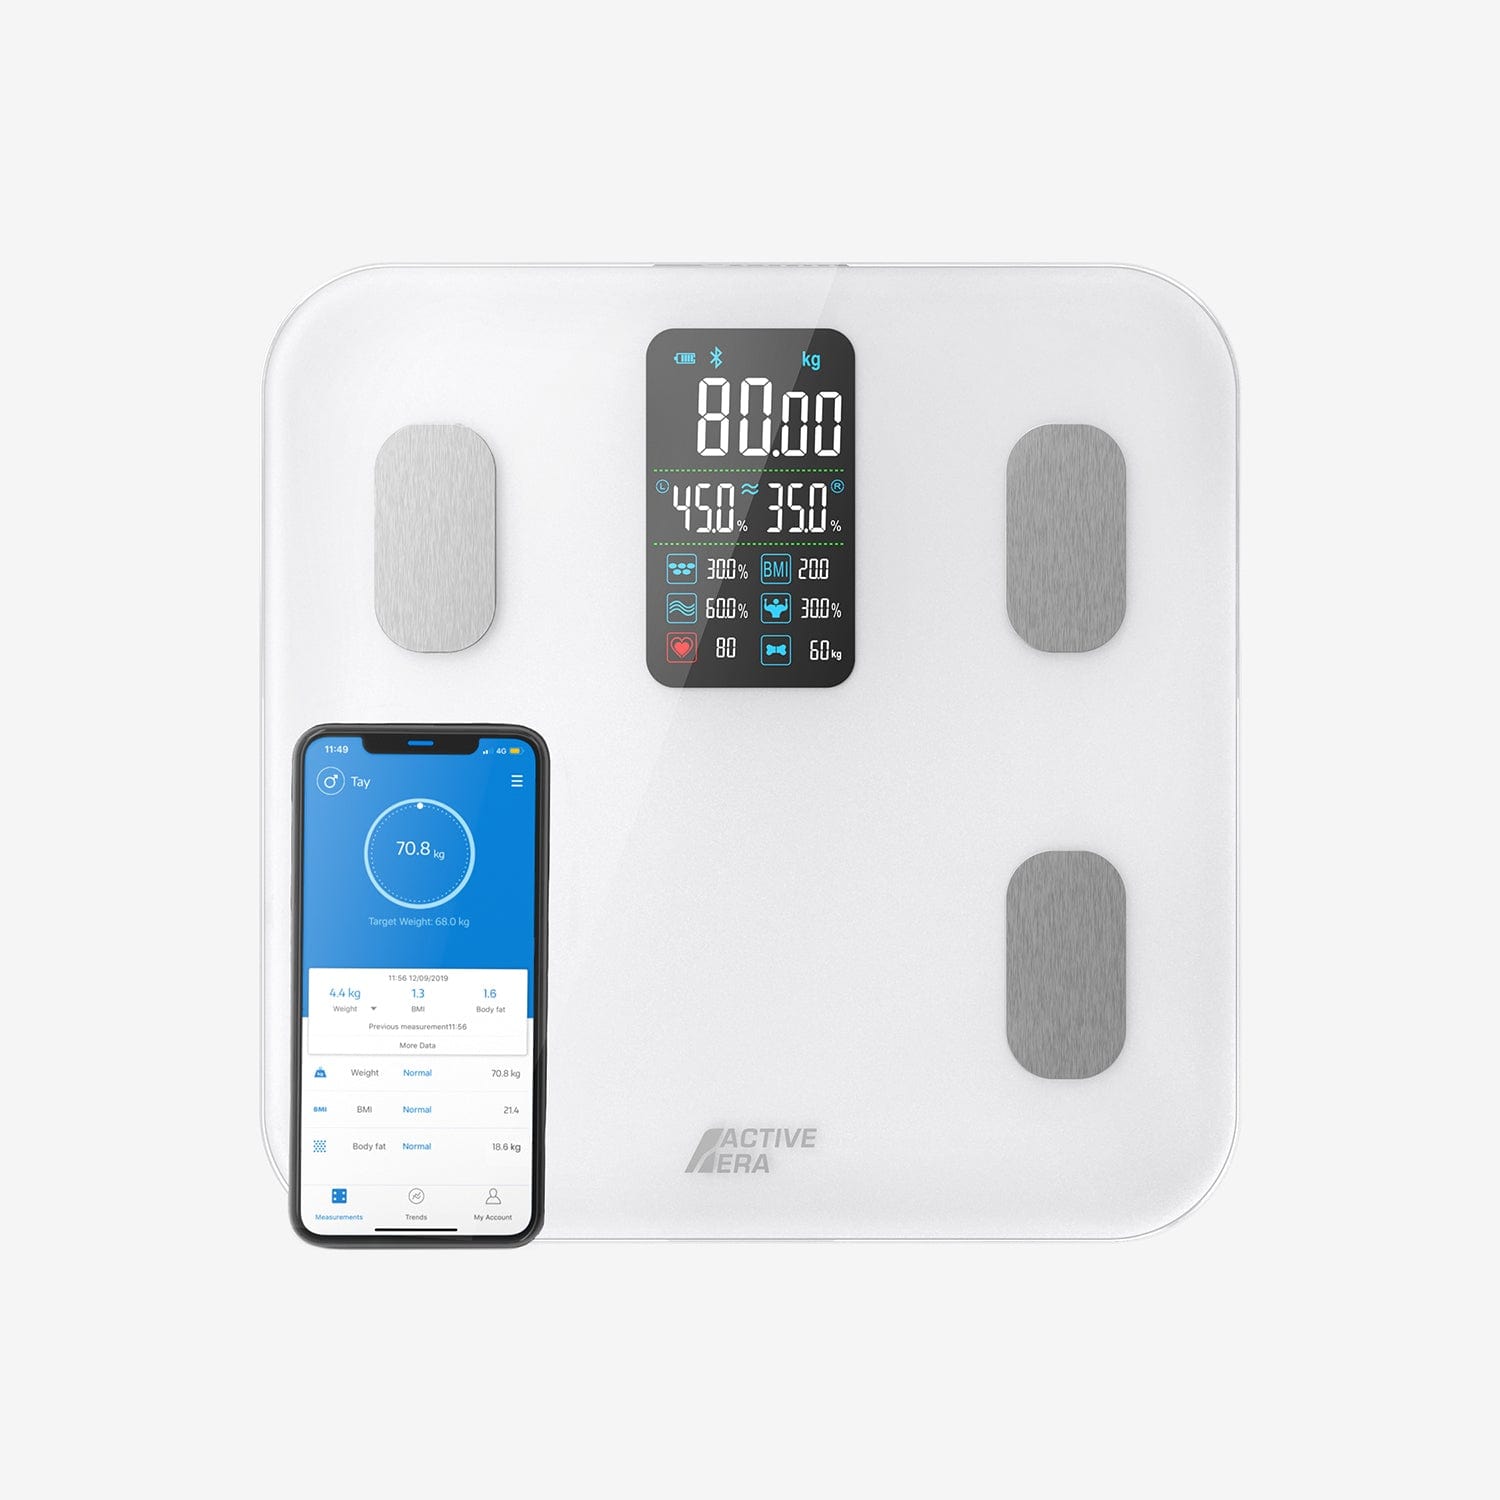 Balance intelligente Bluetooth - Mesure la graisse corporelle, l'IMC, la  masse musculaire et plus encore